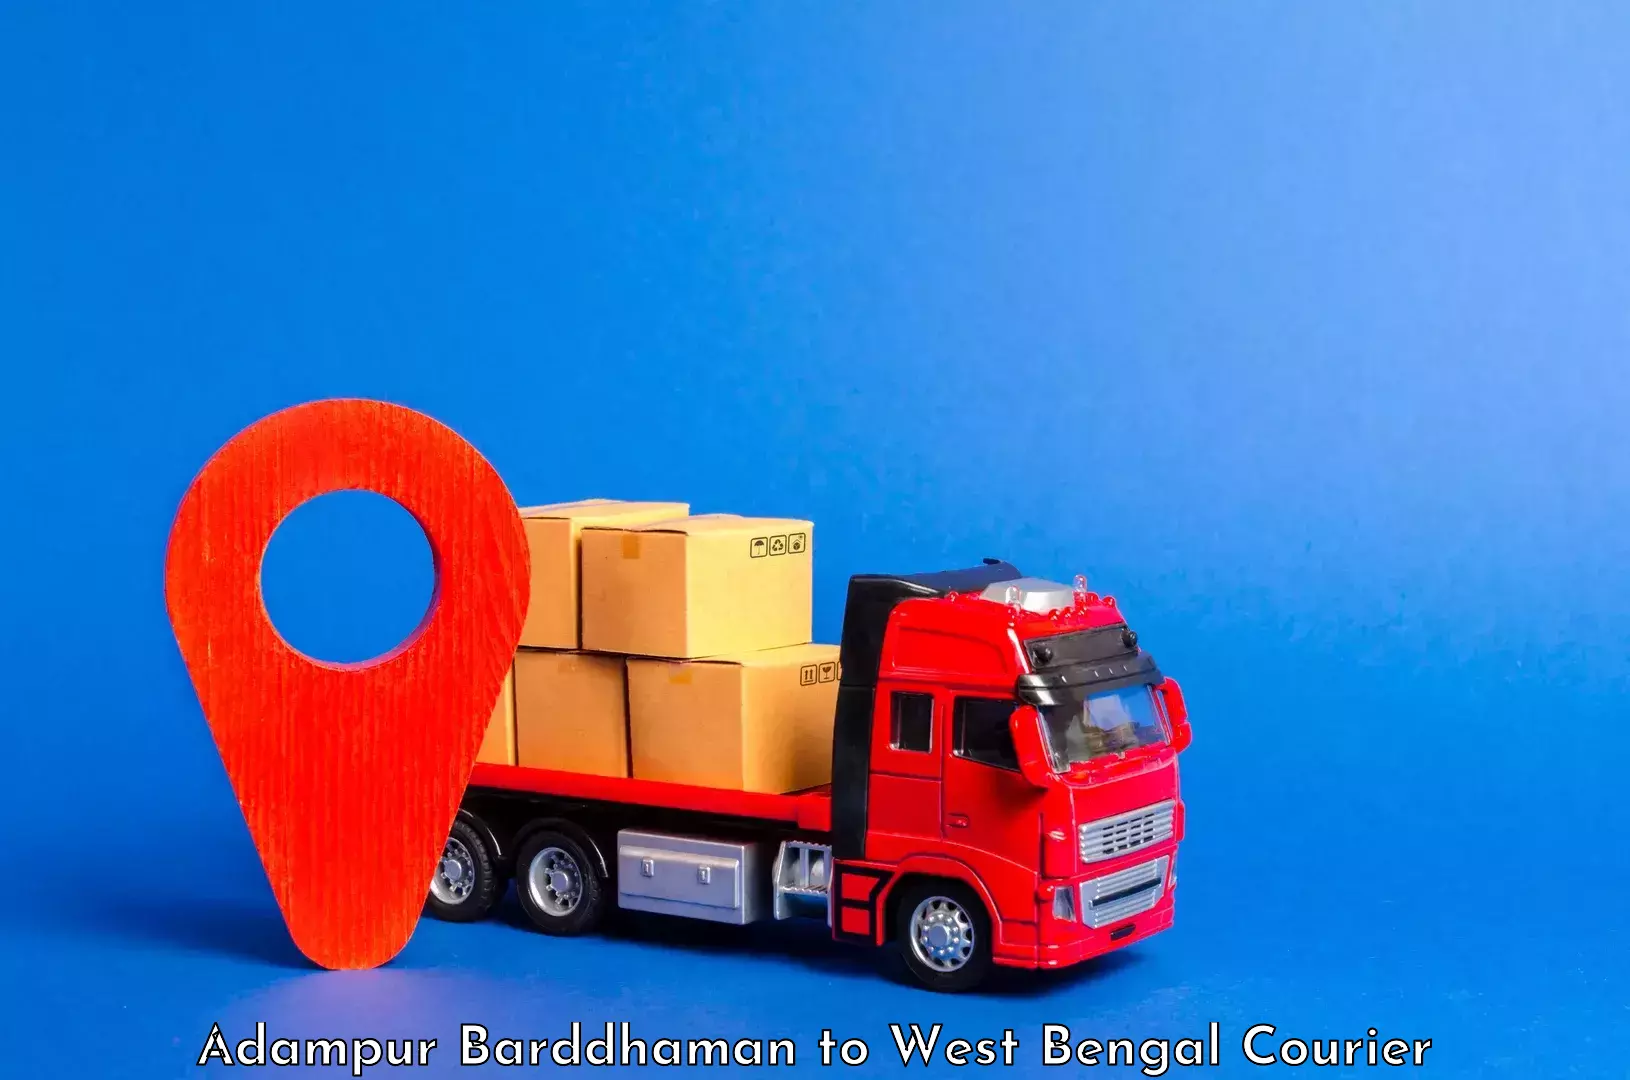 Luggage transport solutions Adampur Barddhaman to Kalijhora